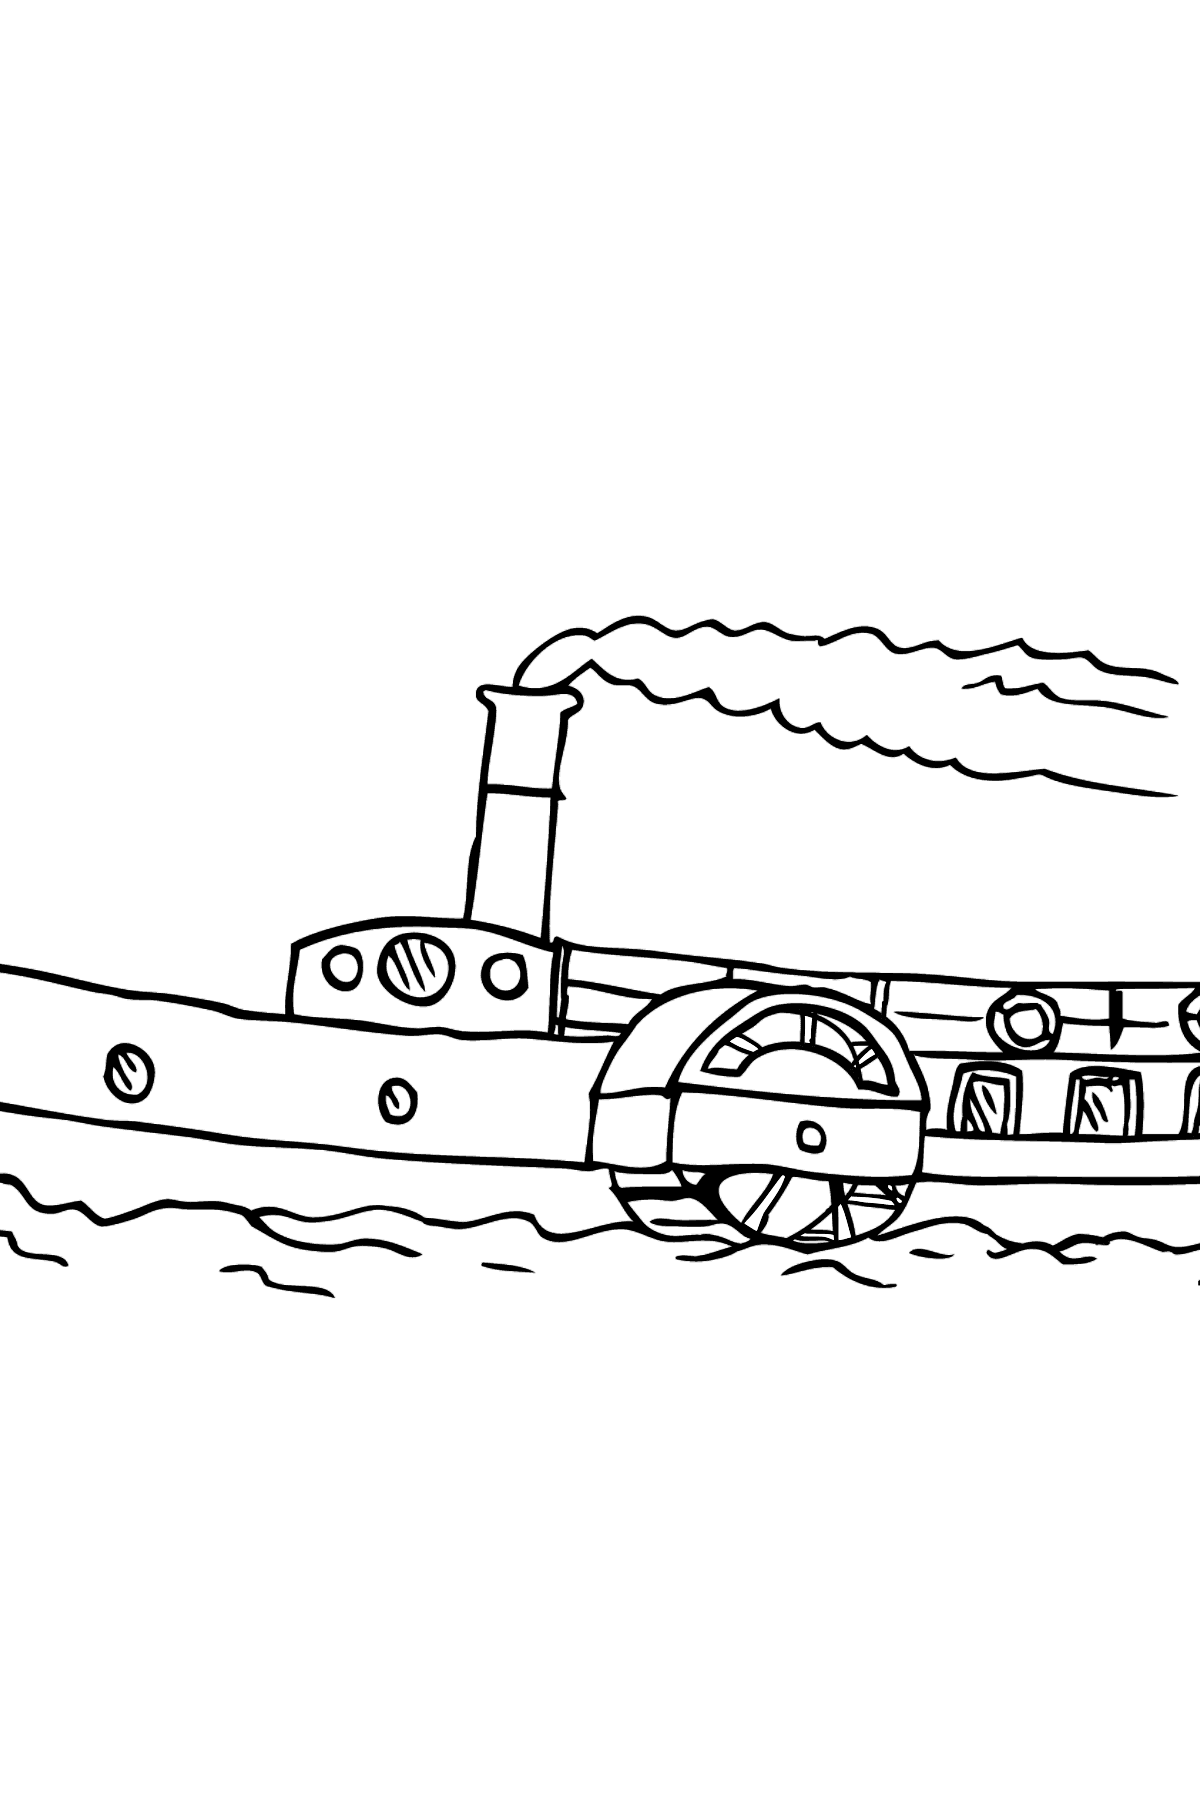 Coloriage - Un navire avec une roue à aubes - Coloriages pour les Enfants